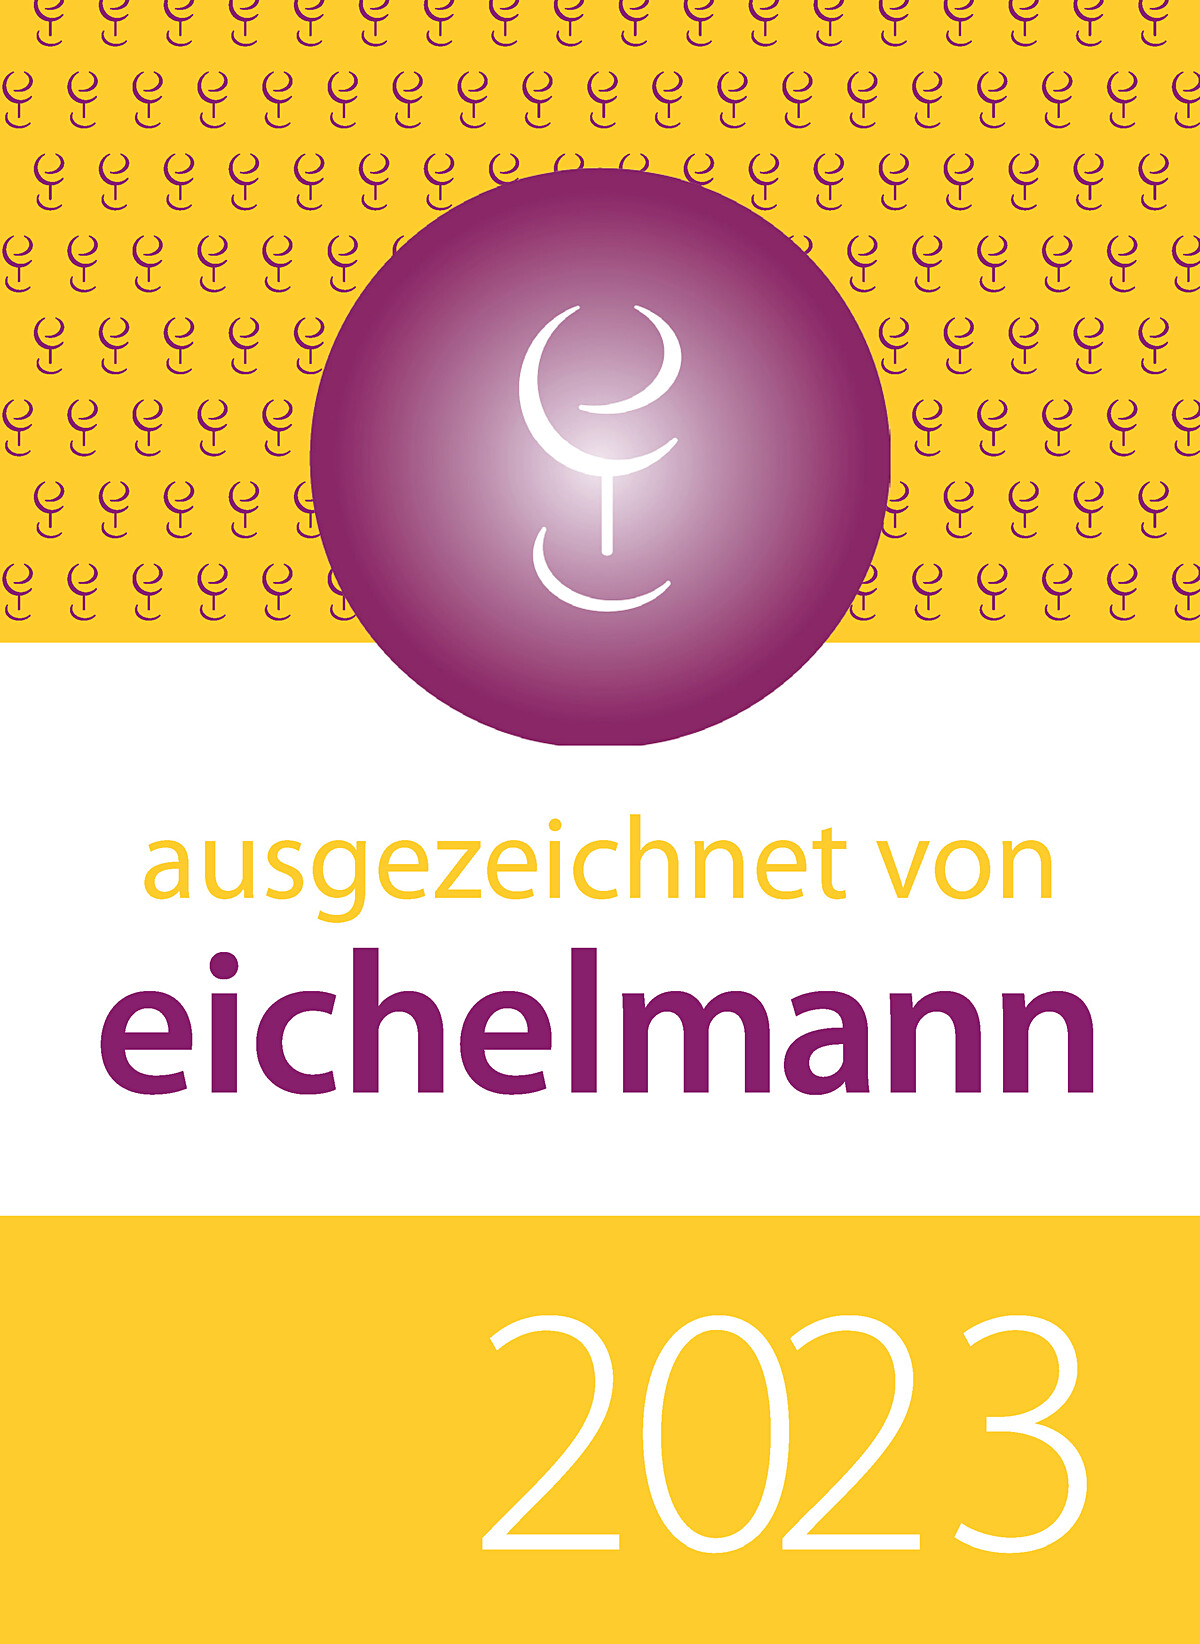 Eichelmann 2023 | © Weingut Siegrist GdbR